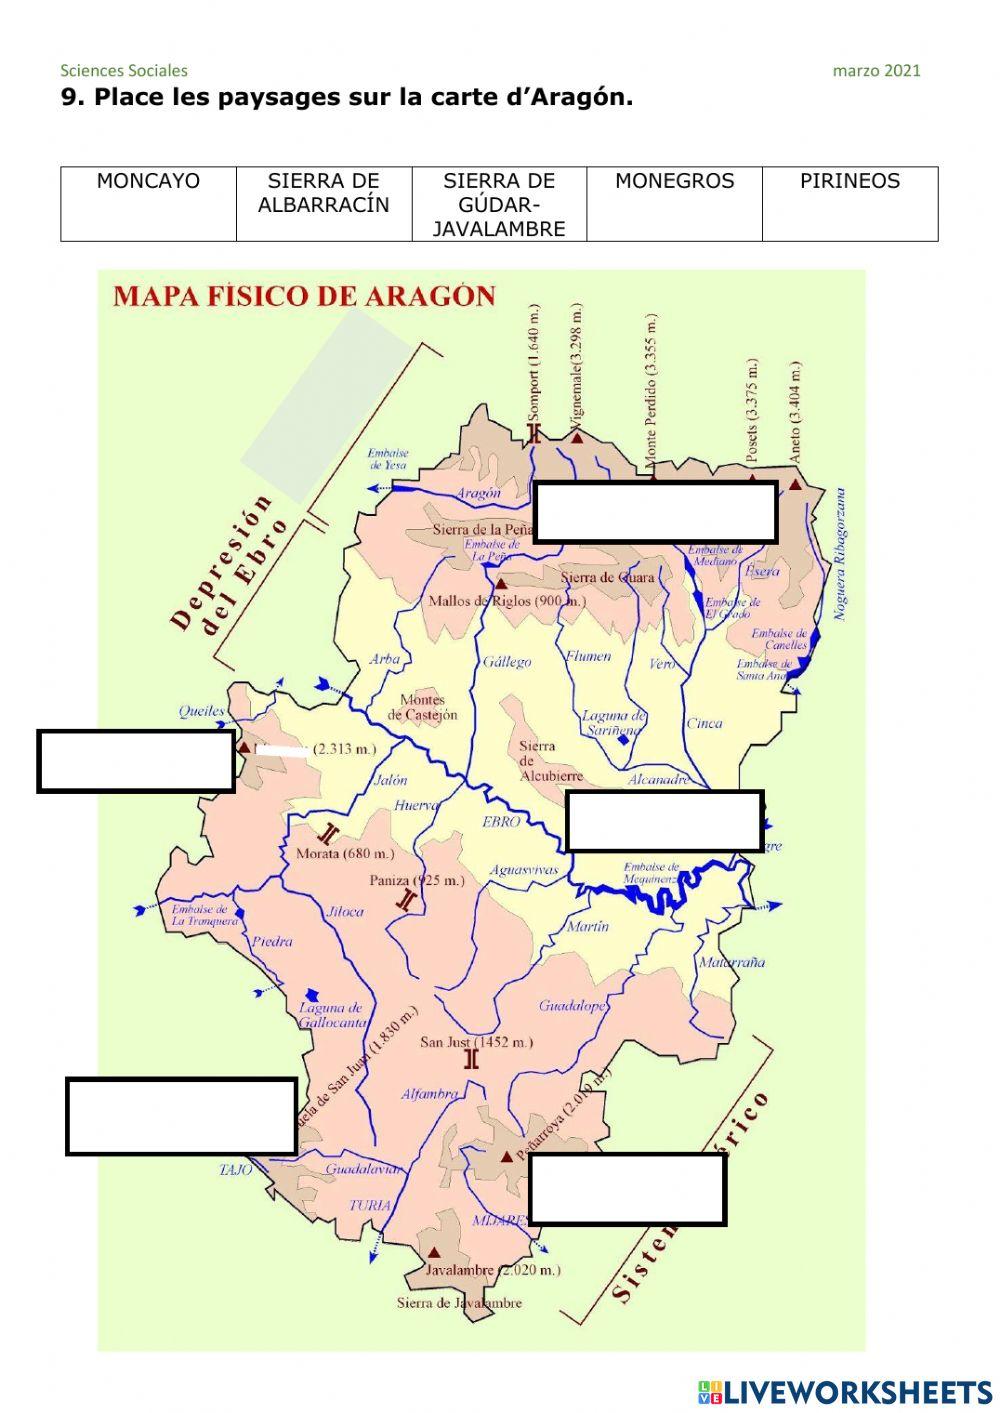 La terre, l'eau et Aragón